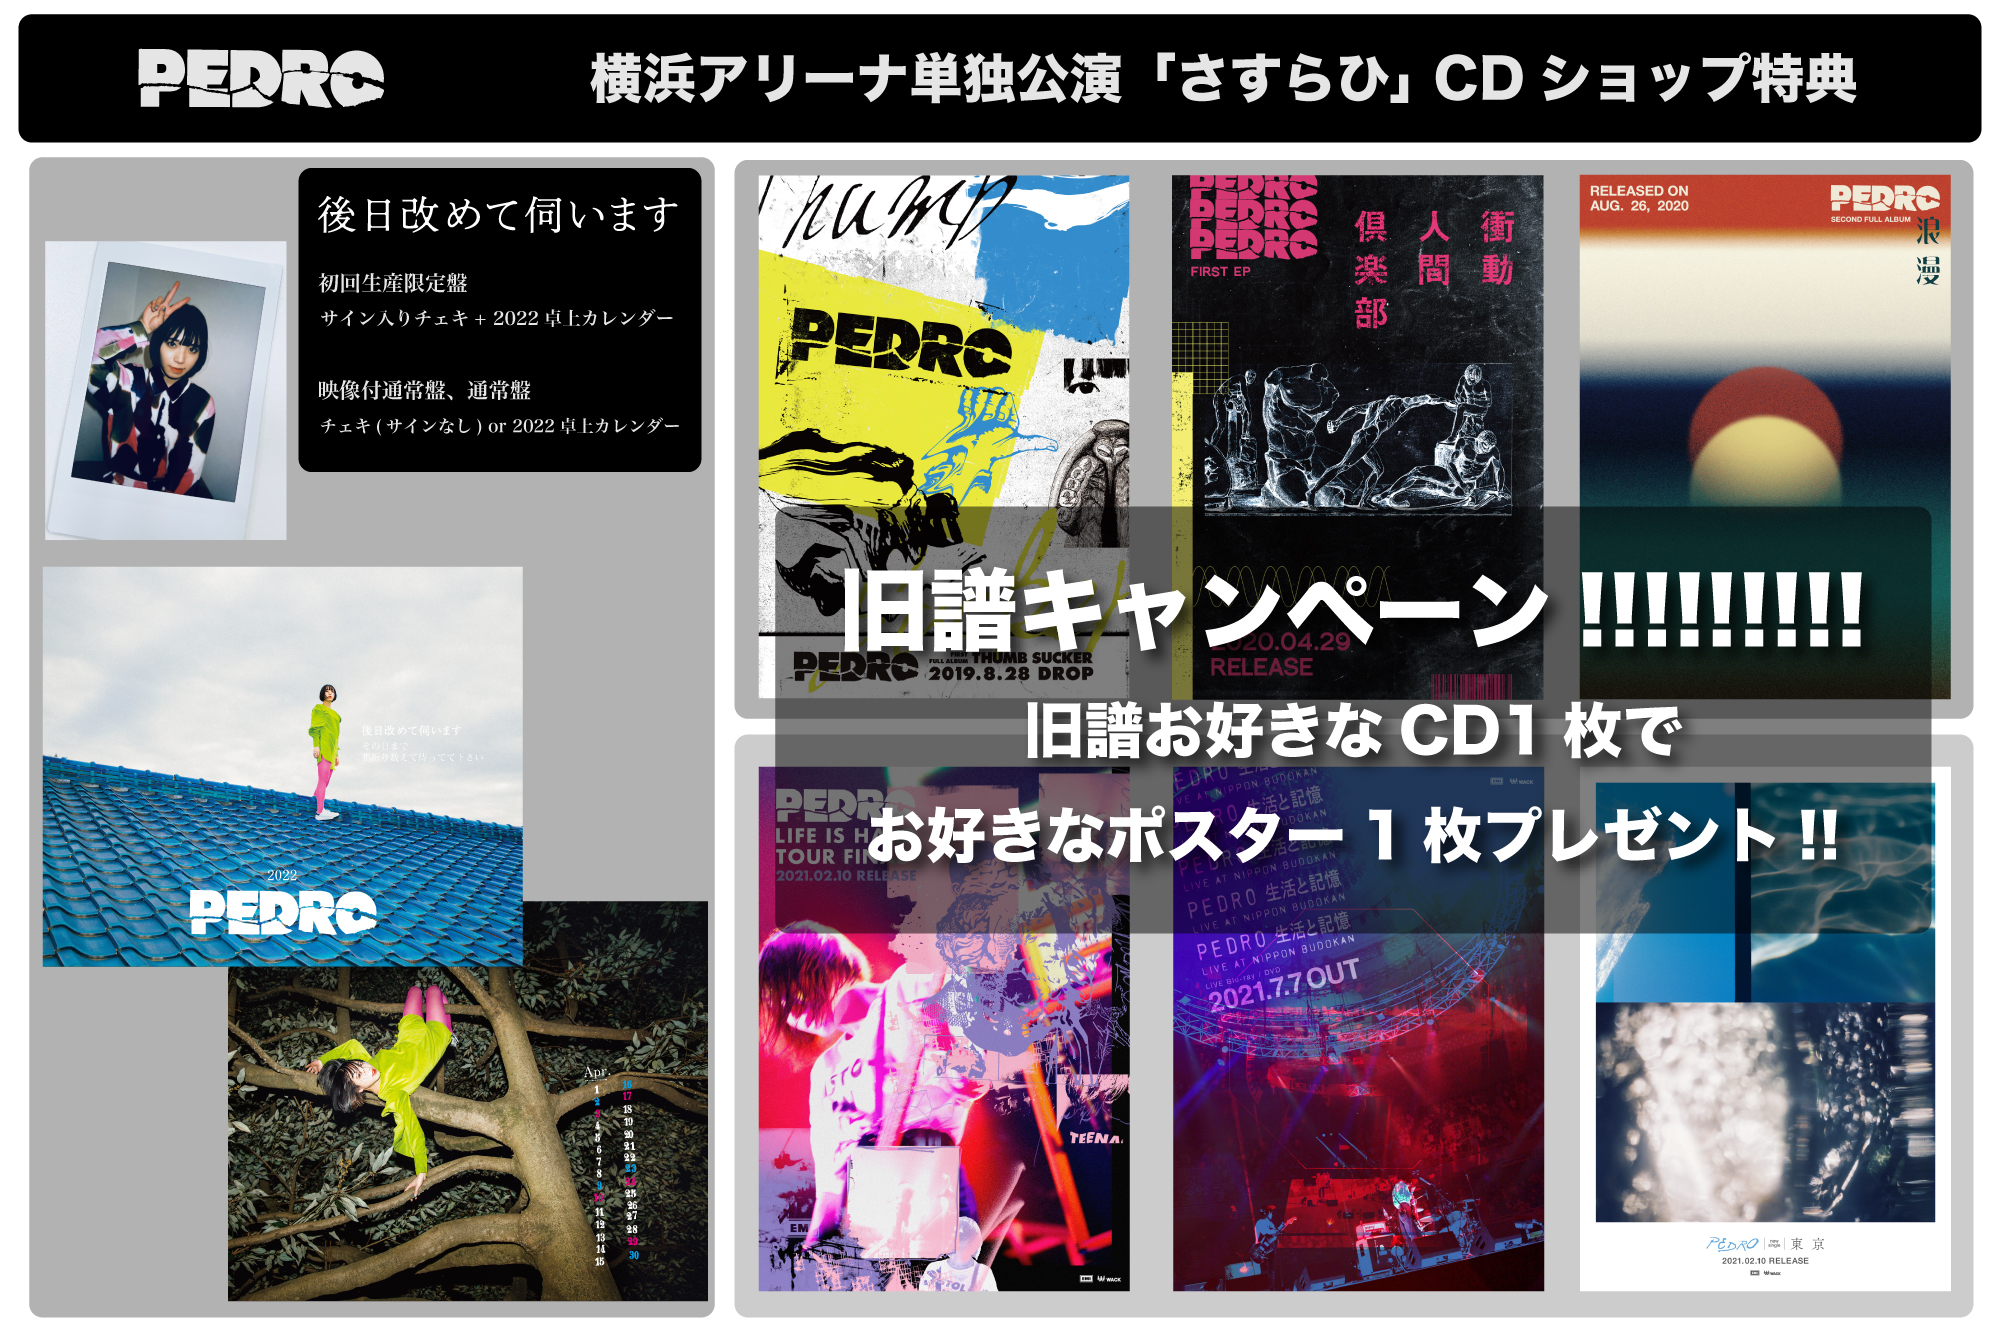 横浜アリーナ公演CD購入者特典決定!!｜PEDRO OFFICIAL SITE